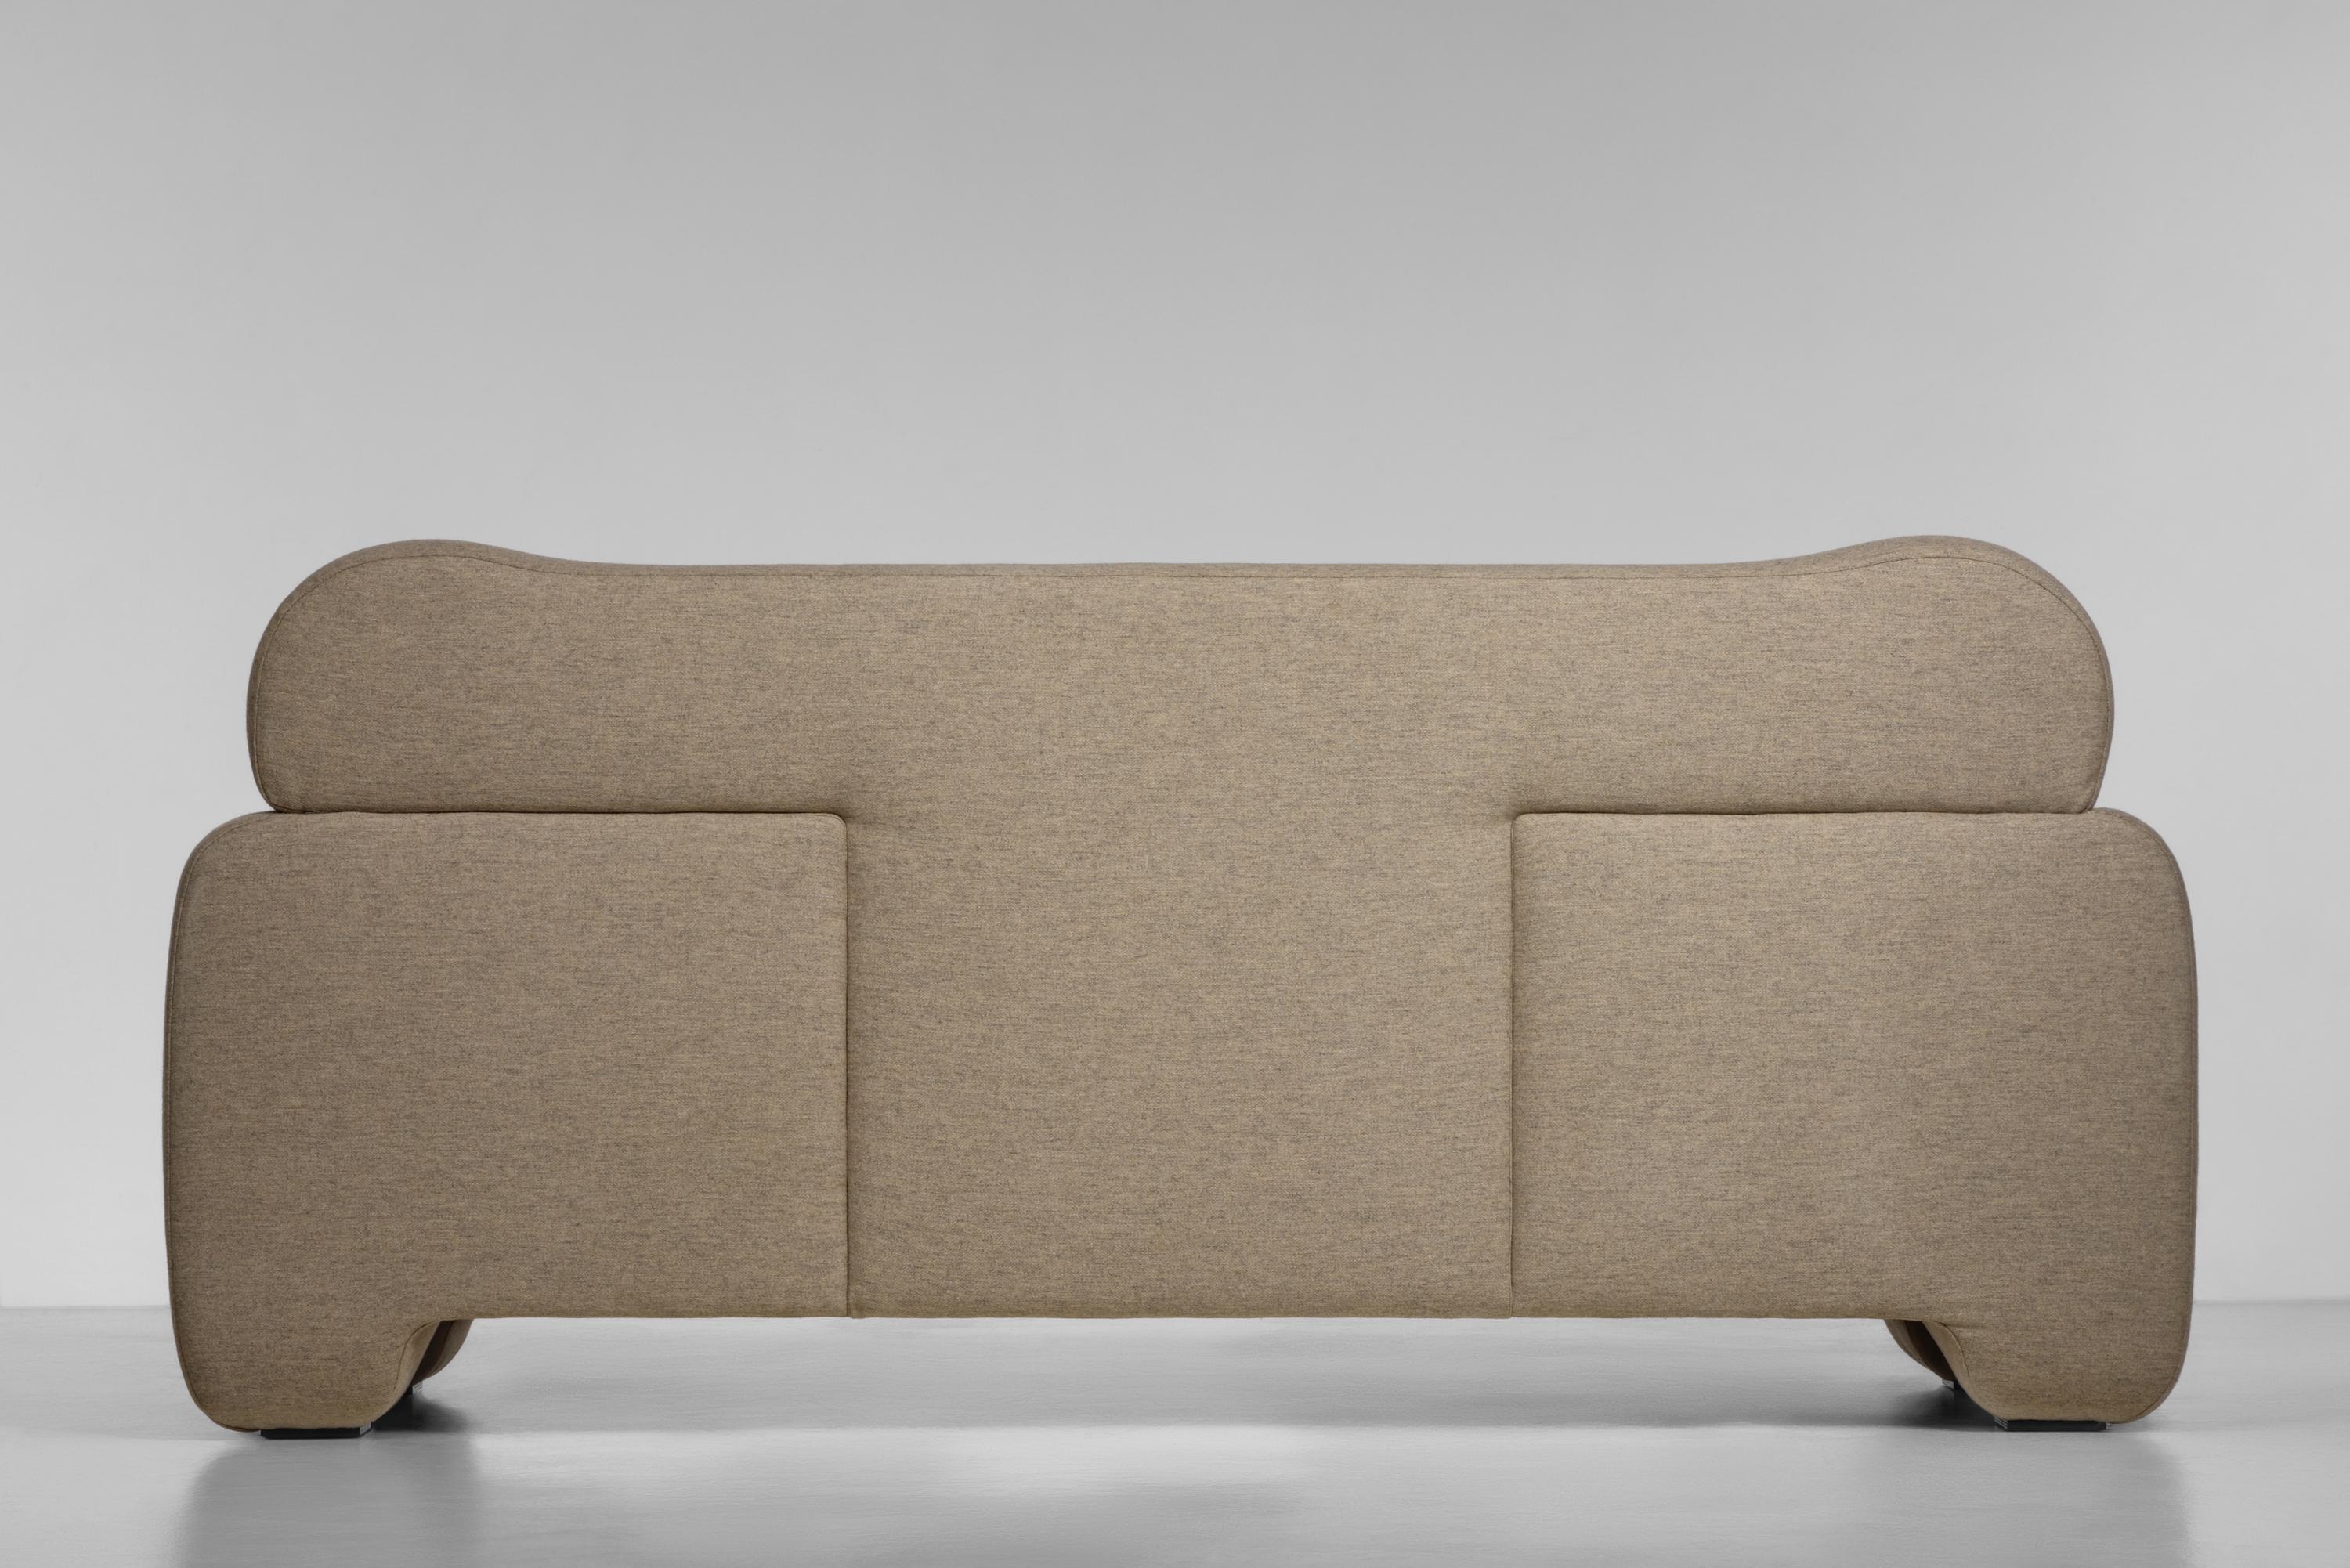 Flauschiges Sofa von FAINA
Entwurf: Victoriya Yakusha
MATERIAL: Textilien, Moosgummi, Sintepon, Holz
Abmessungen: 180 × 84 × 90 cm, 35 kg 

w 240 cm erhältlich, bitte kontaktieren Sie uns.

Auf der Suche nach neuen alten Designbotschaften hat